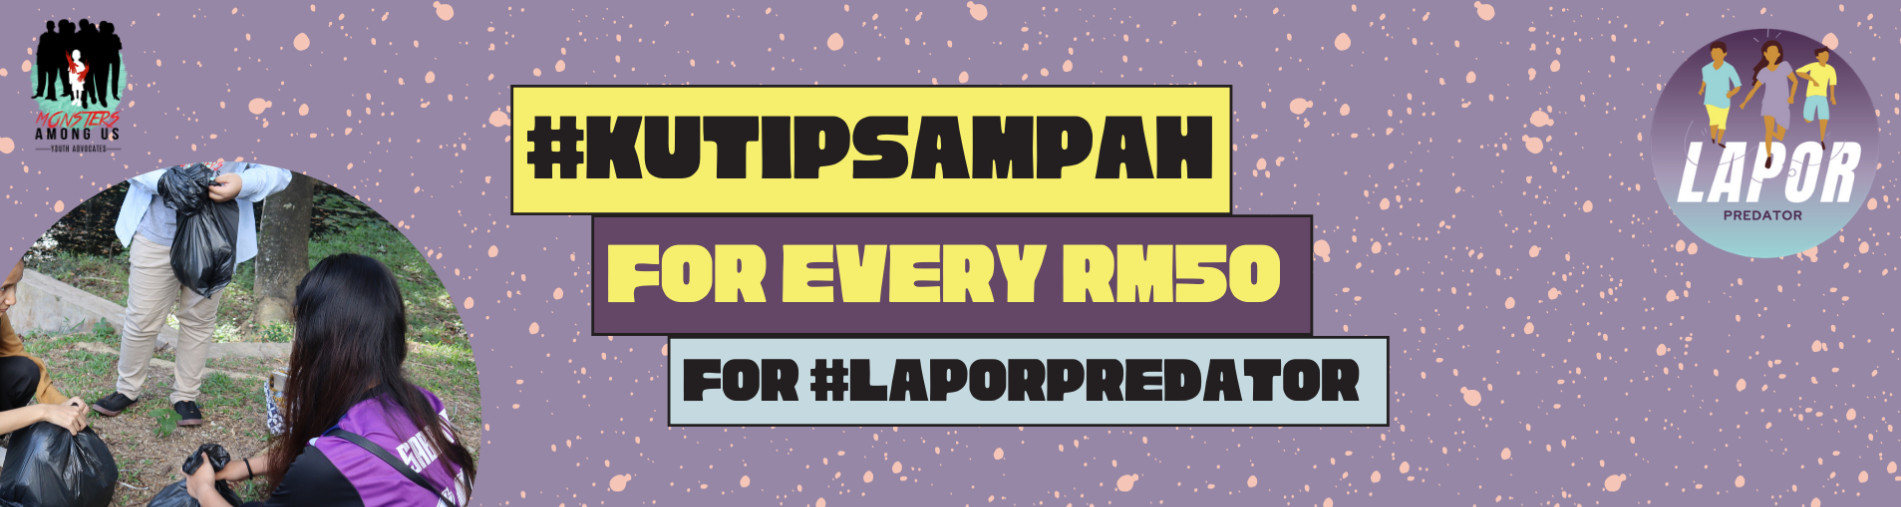 #KutipSampahChallenge for #LaporPredator